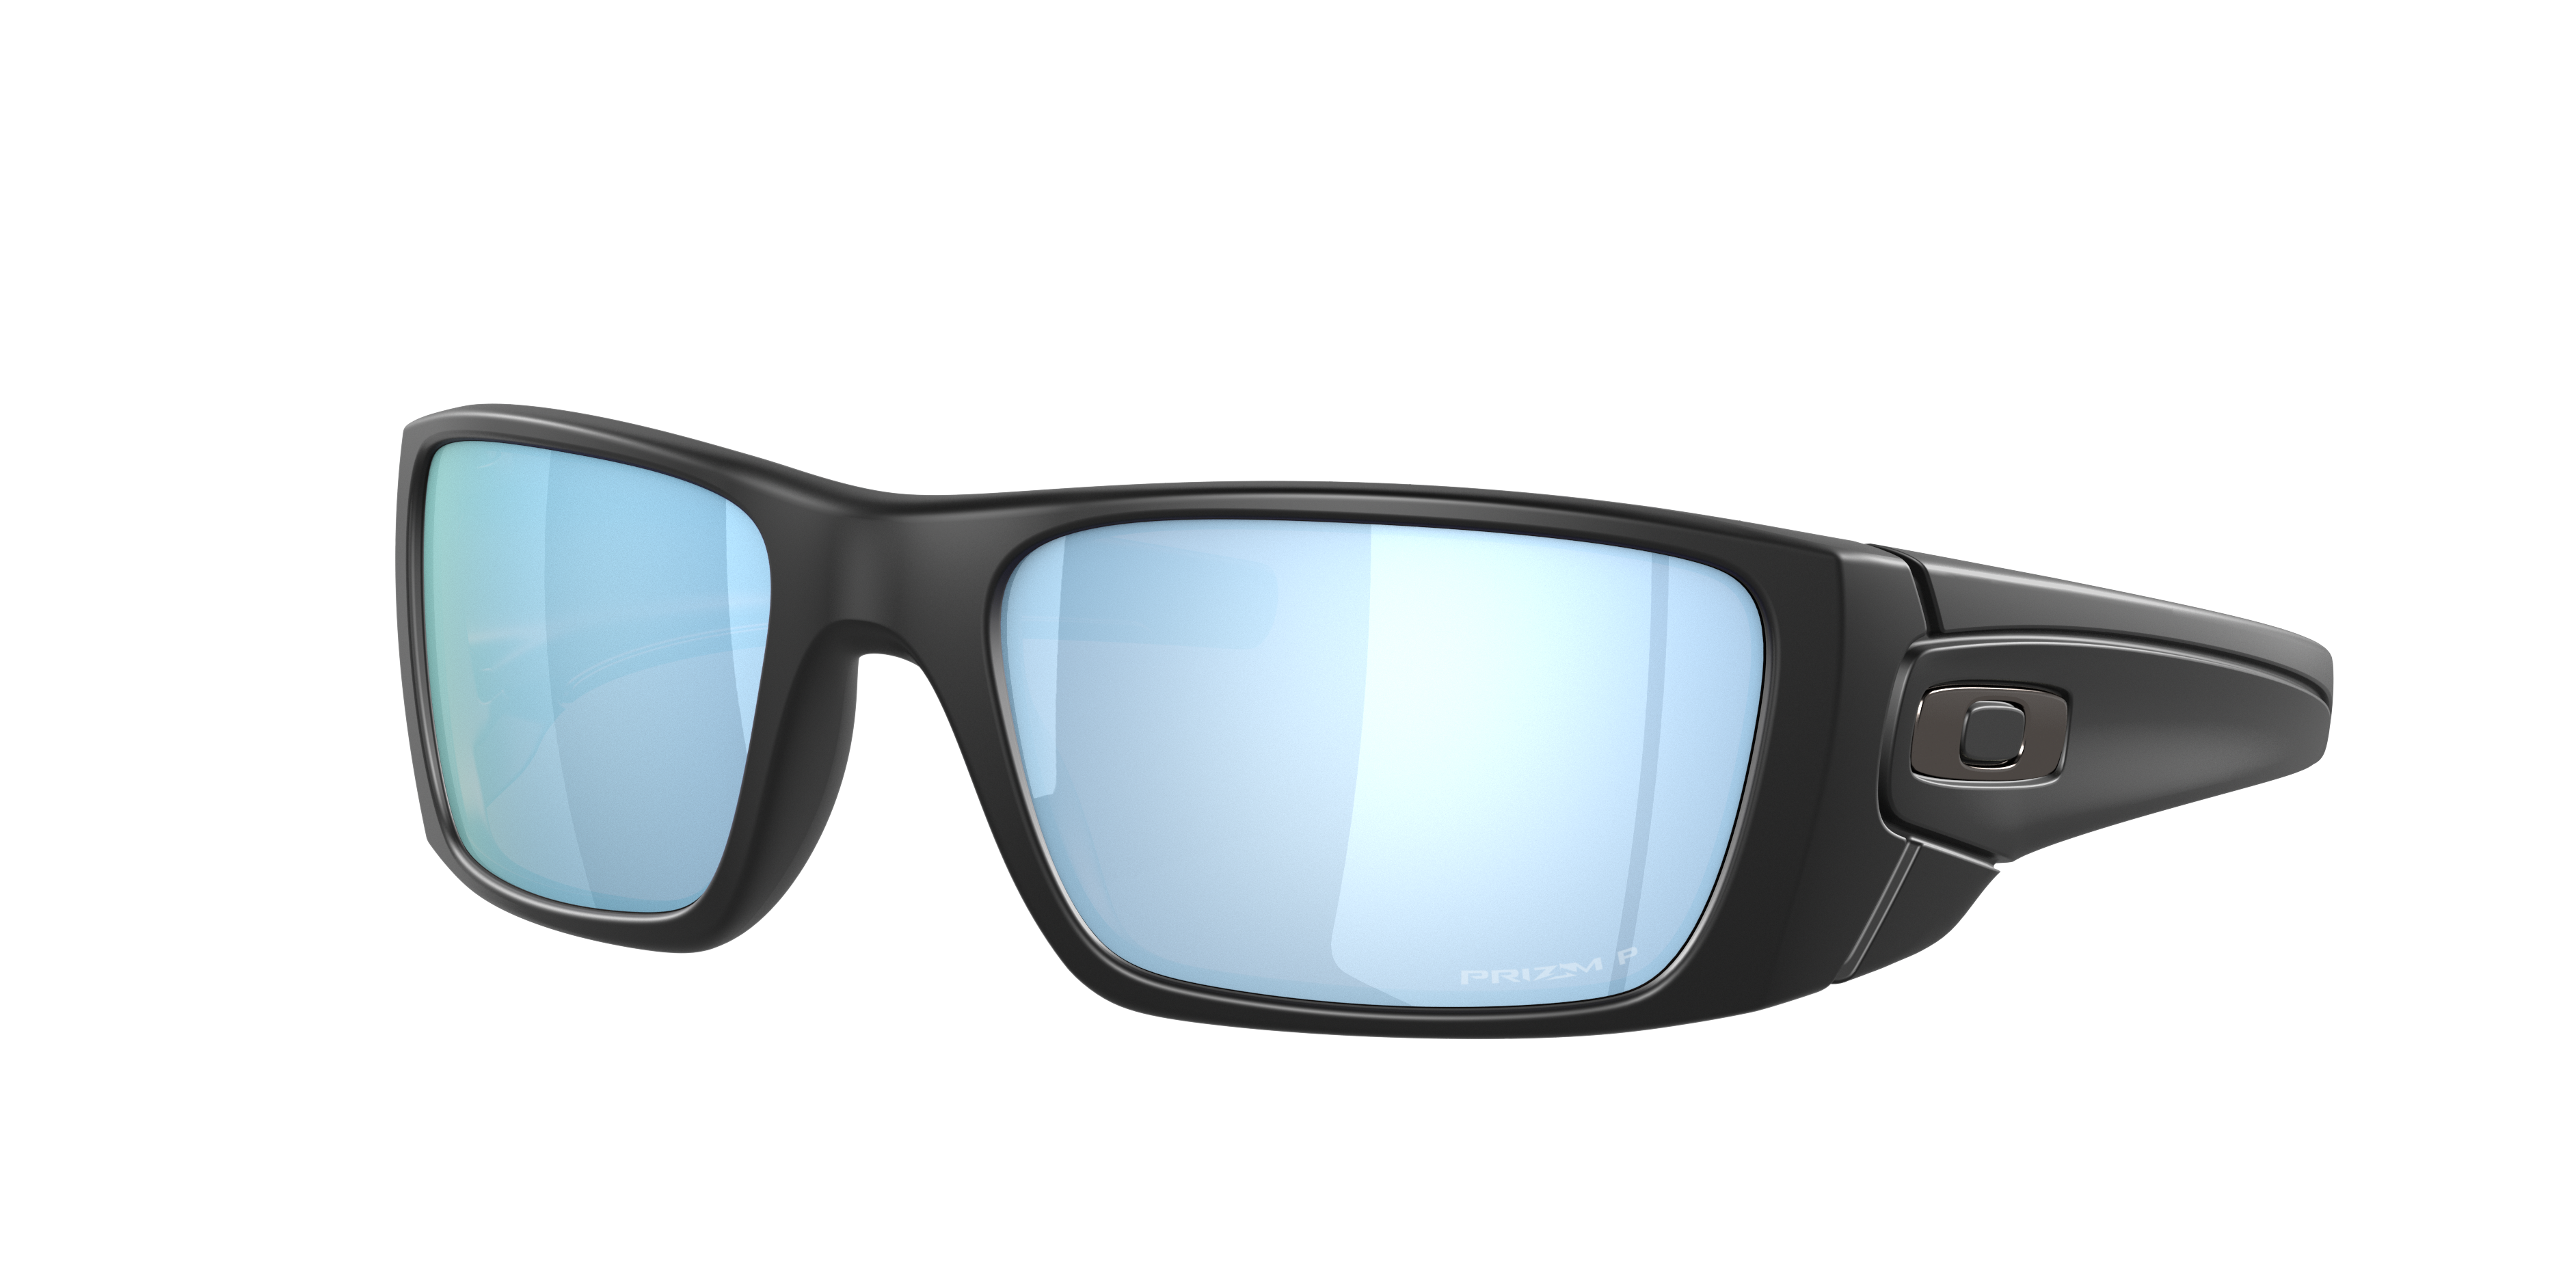 oakley sunglasses online store